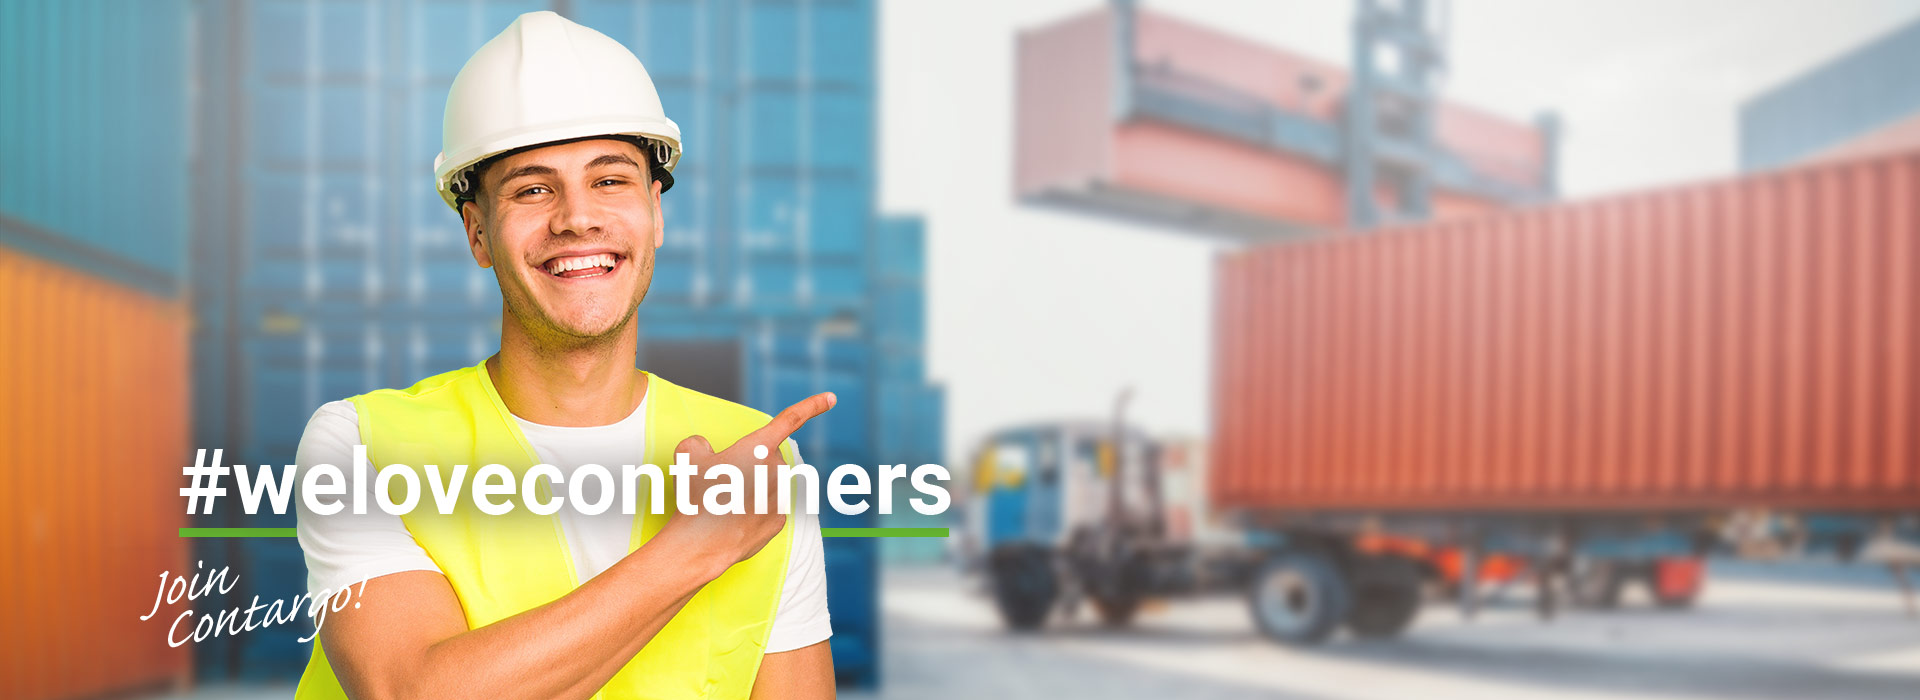 Auszubildender in Helm und Warnweste vor Container-Terminal